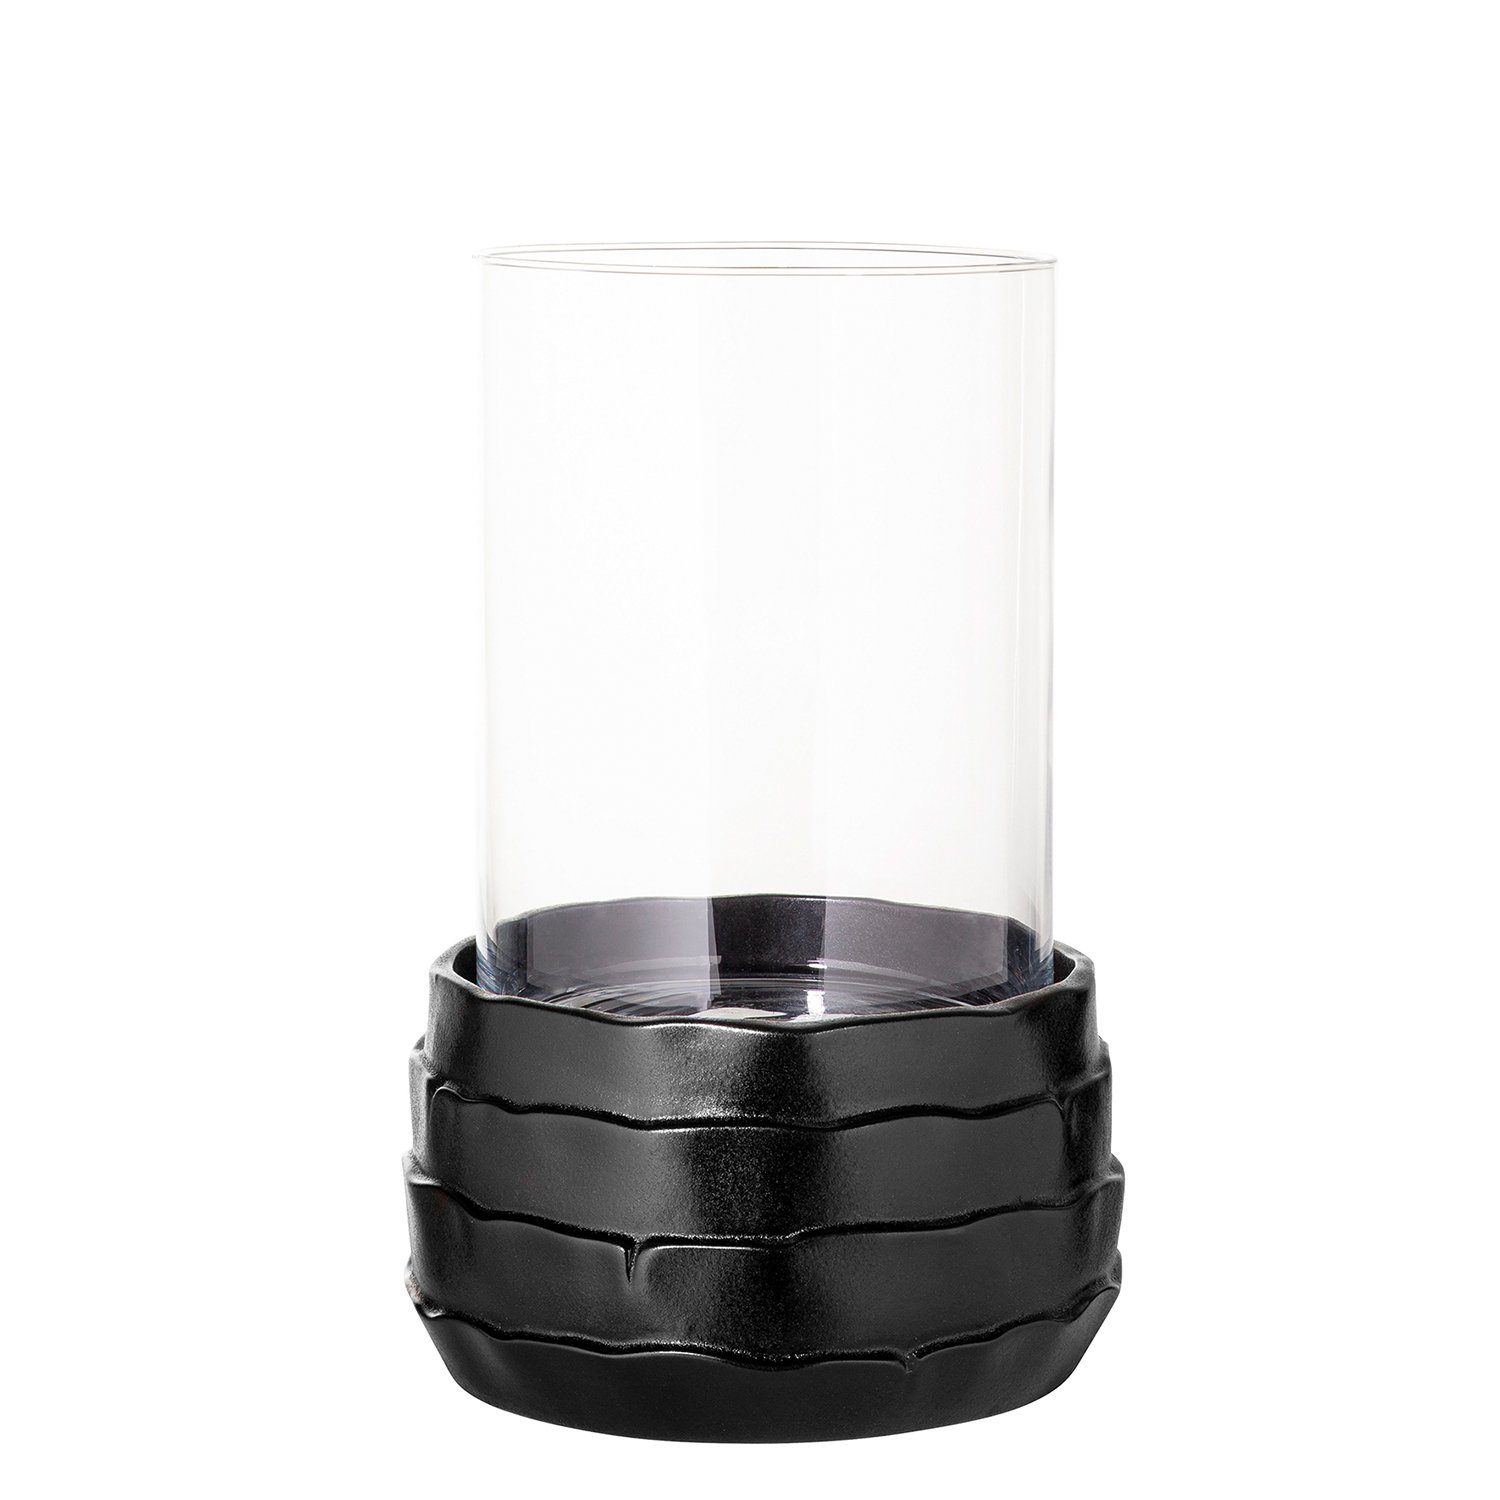 Fink Windlicht Windlicht COCON - schwarz - Keramik - Glas - H.34cm x Ø 25cm (Keramikbasis + Glas), nicht outdoorgeeignet | Windlichter